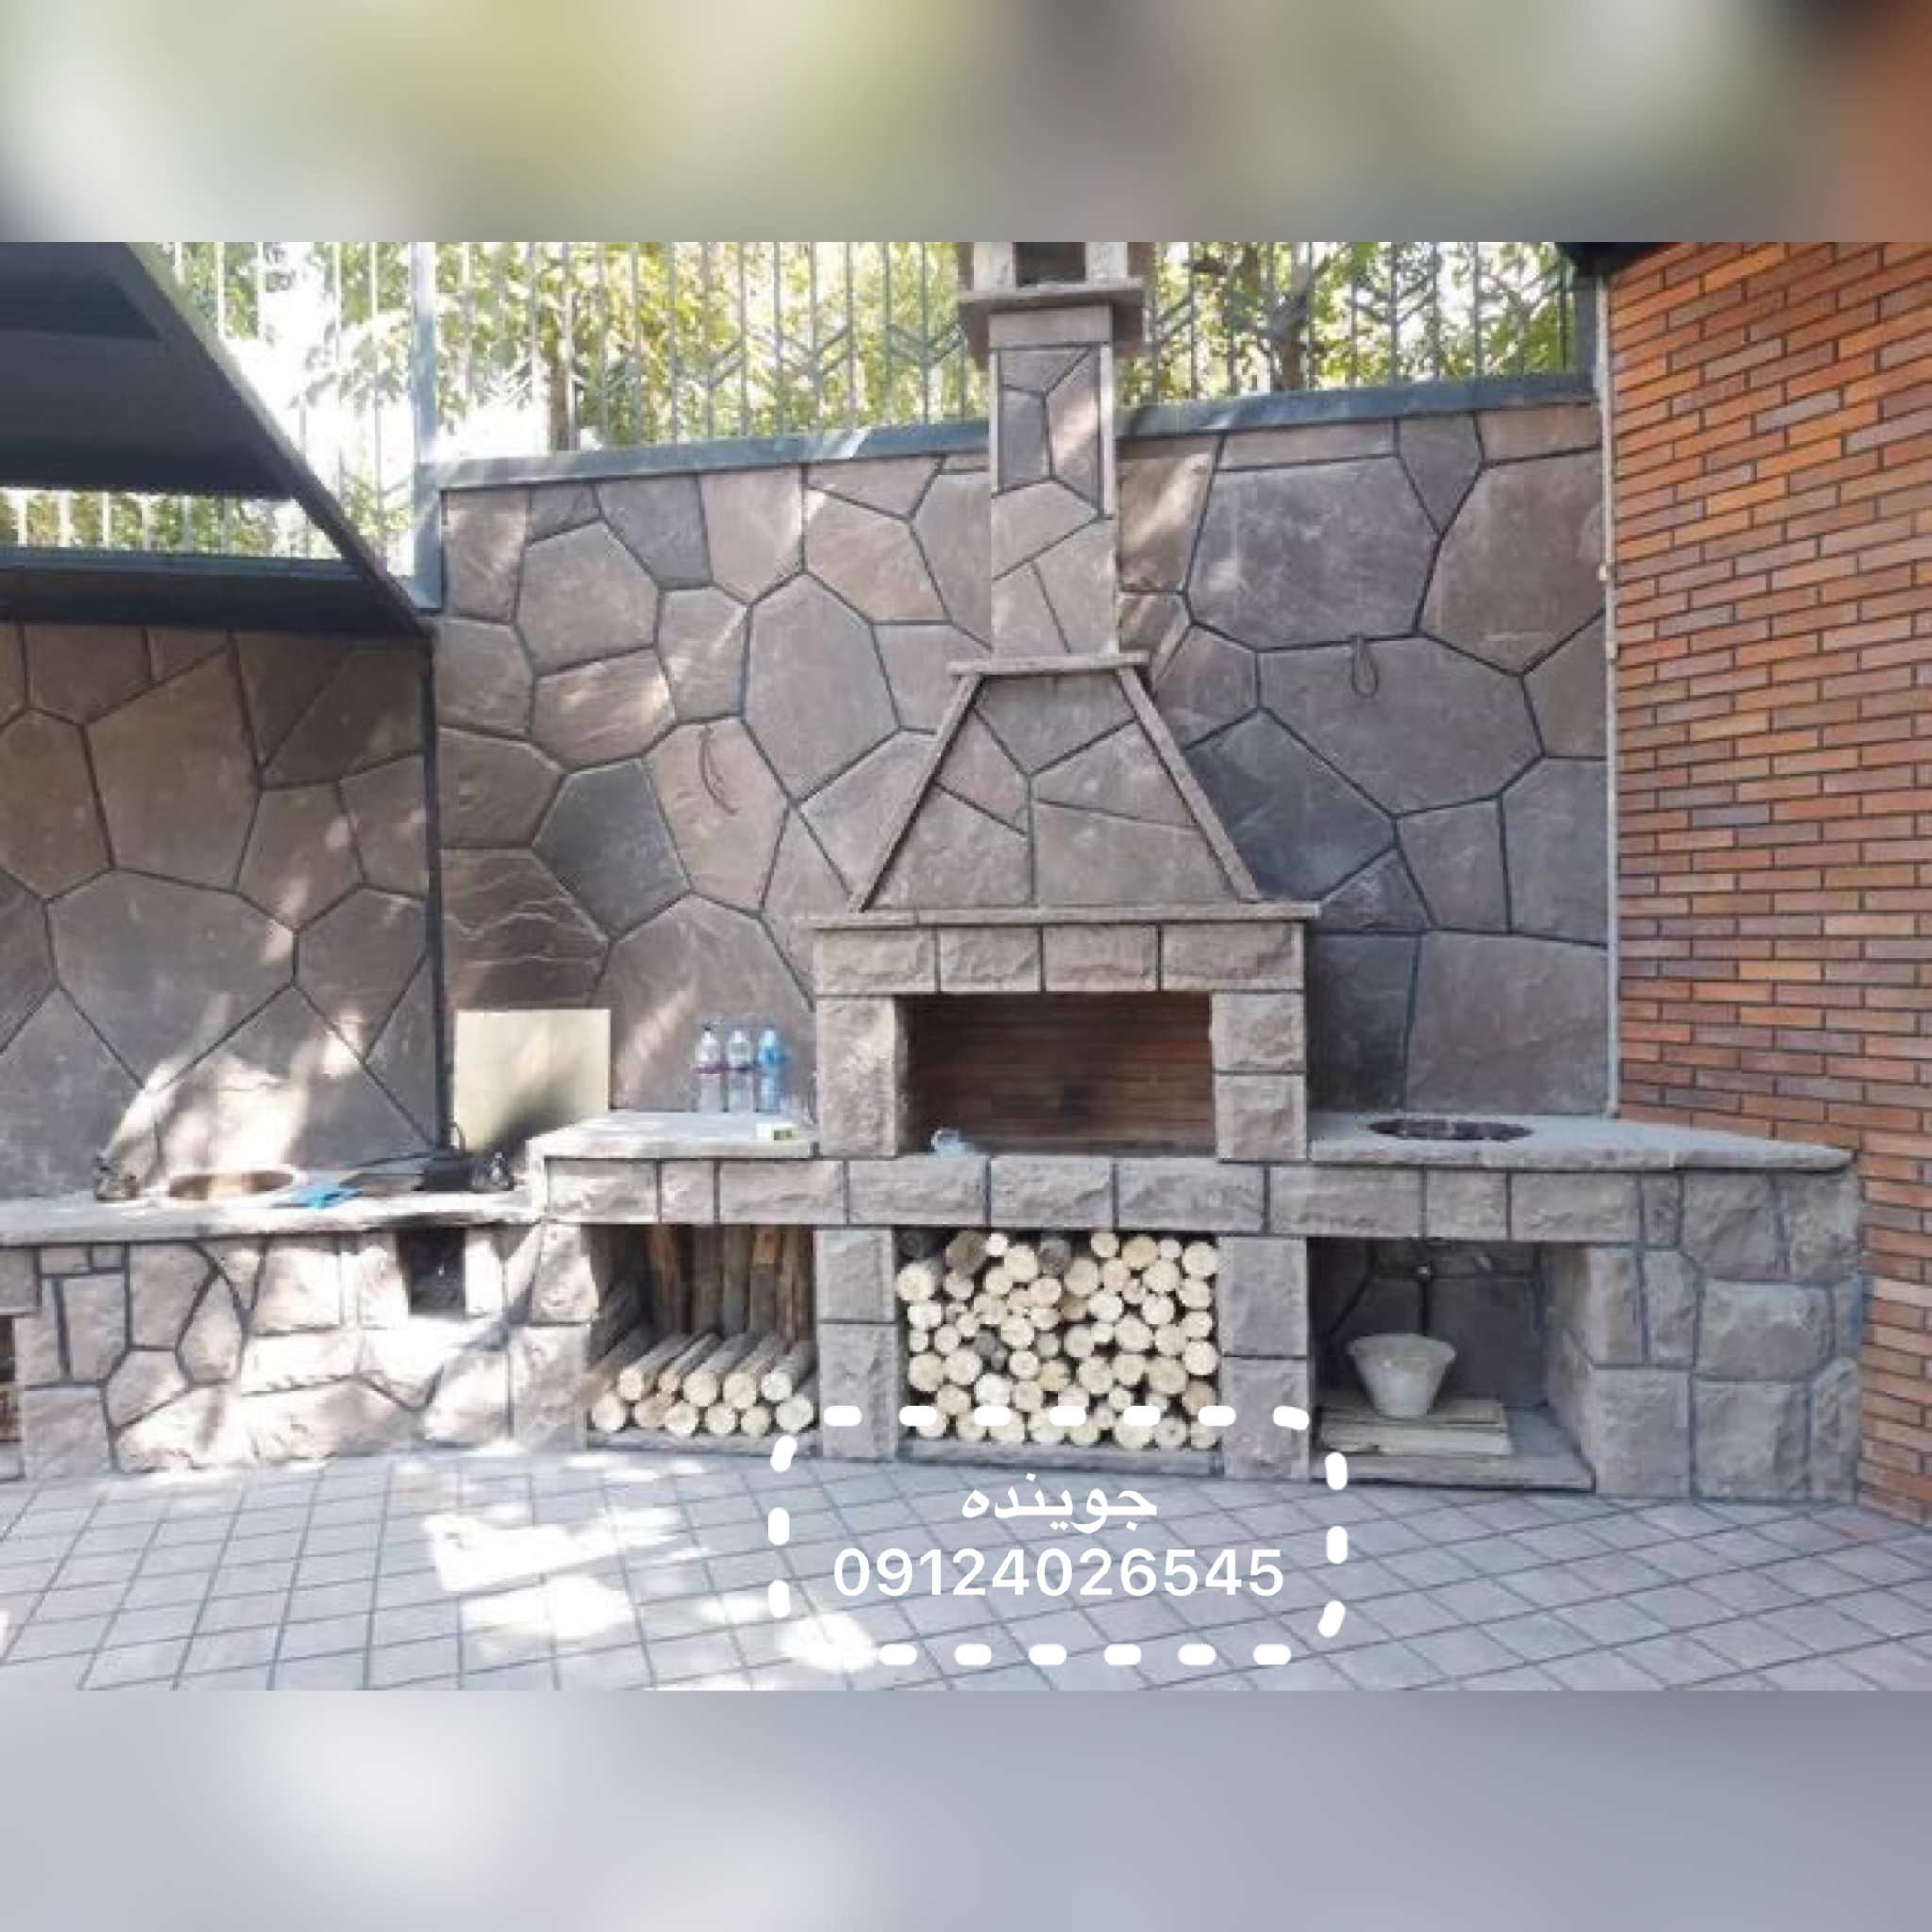 نصب و اجرای سنگ لاشه و سنگ مالون برای تمام بخش های محوطه سازی باغ ویلا با استفاده از سنگ لاشه و سنگ مالون نصب و اجرا می شود 